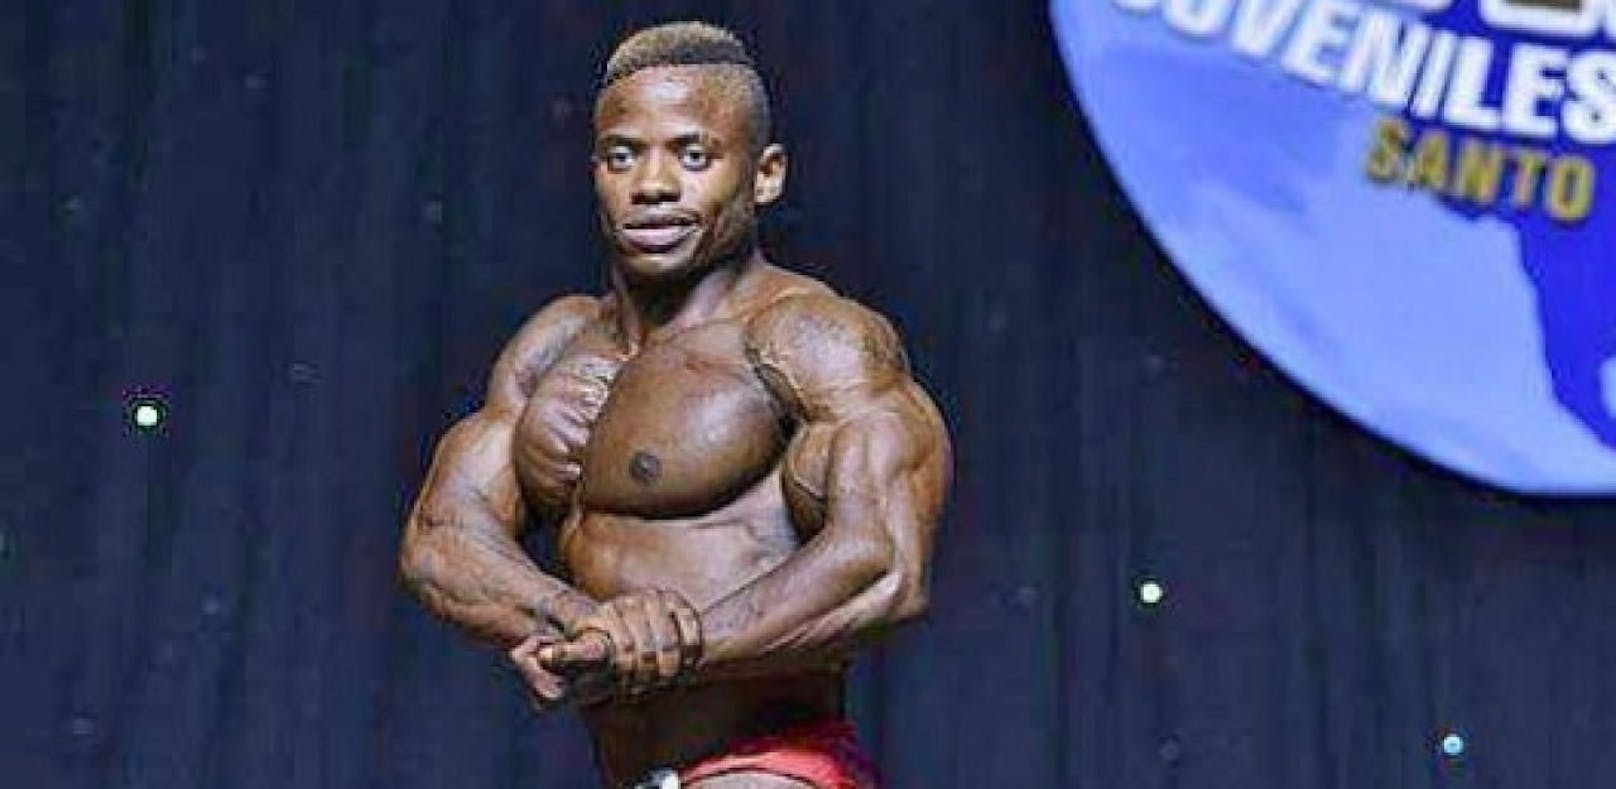 Unfassbar! Bodybuilder (23) stirbt bei Wettkampf